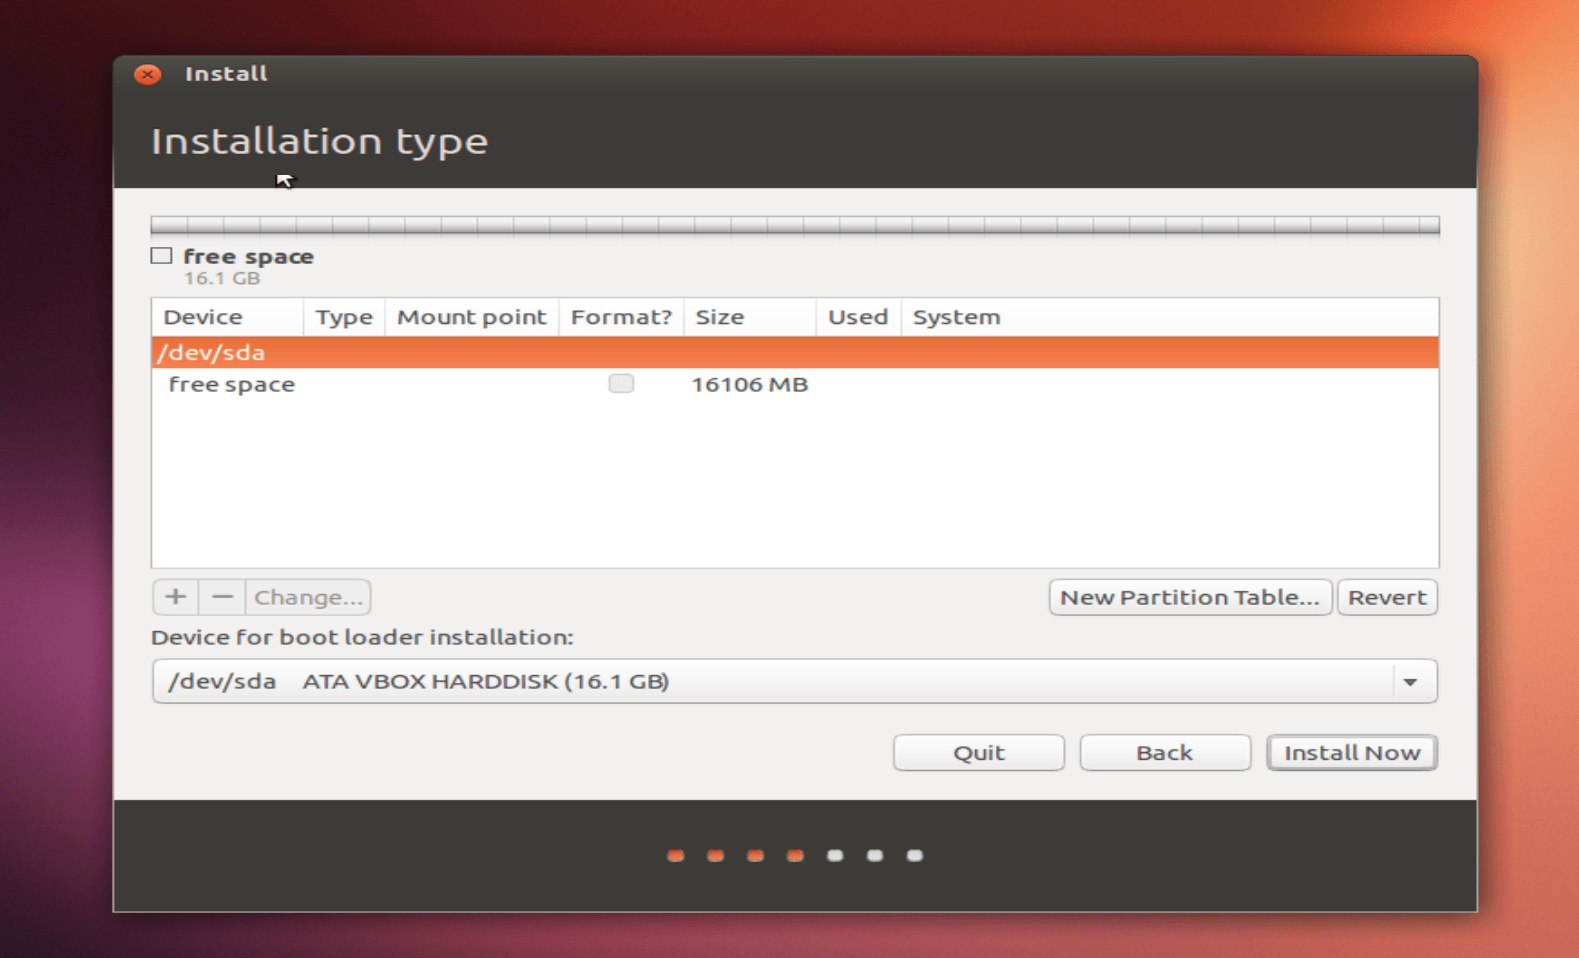 Установка linux ubuntu 20.04 lts – подробная инструкция для начинающих | info-comp.ru - it-блог для начинающих